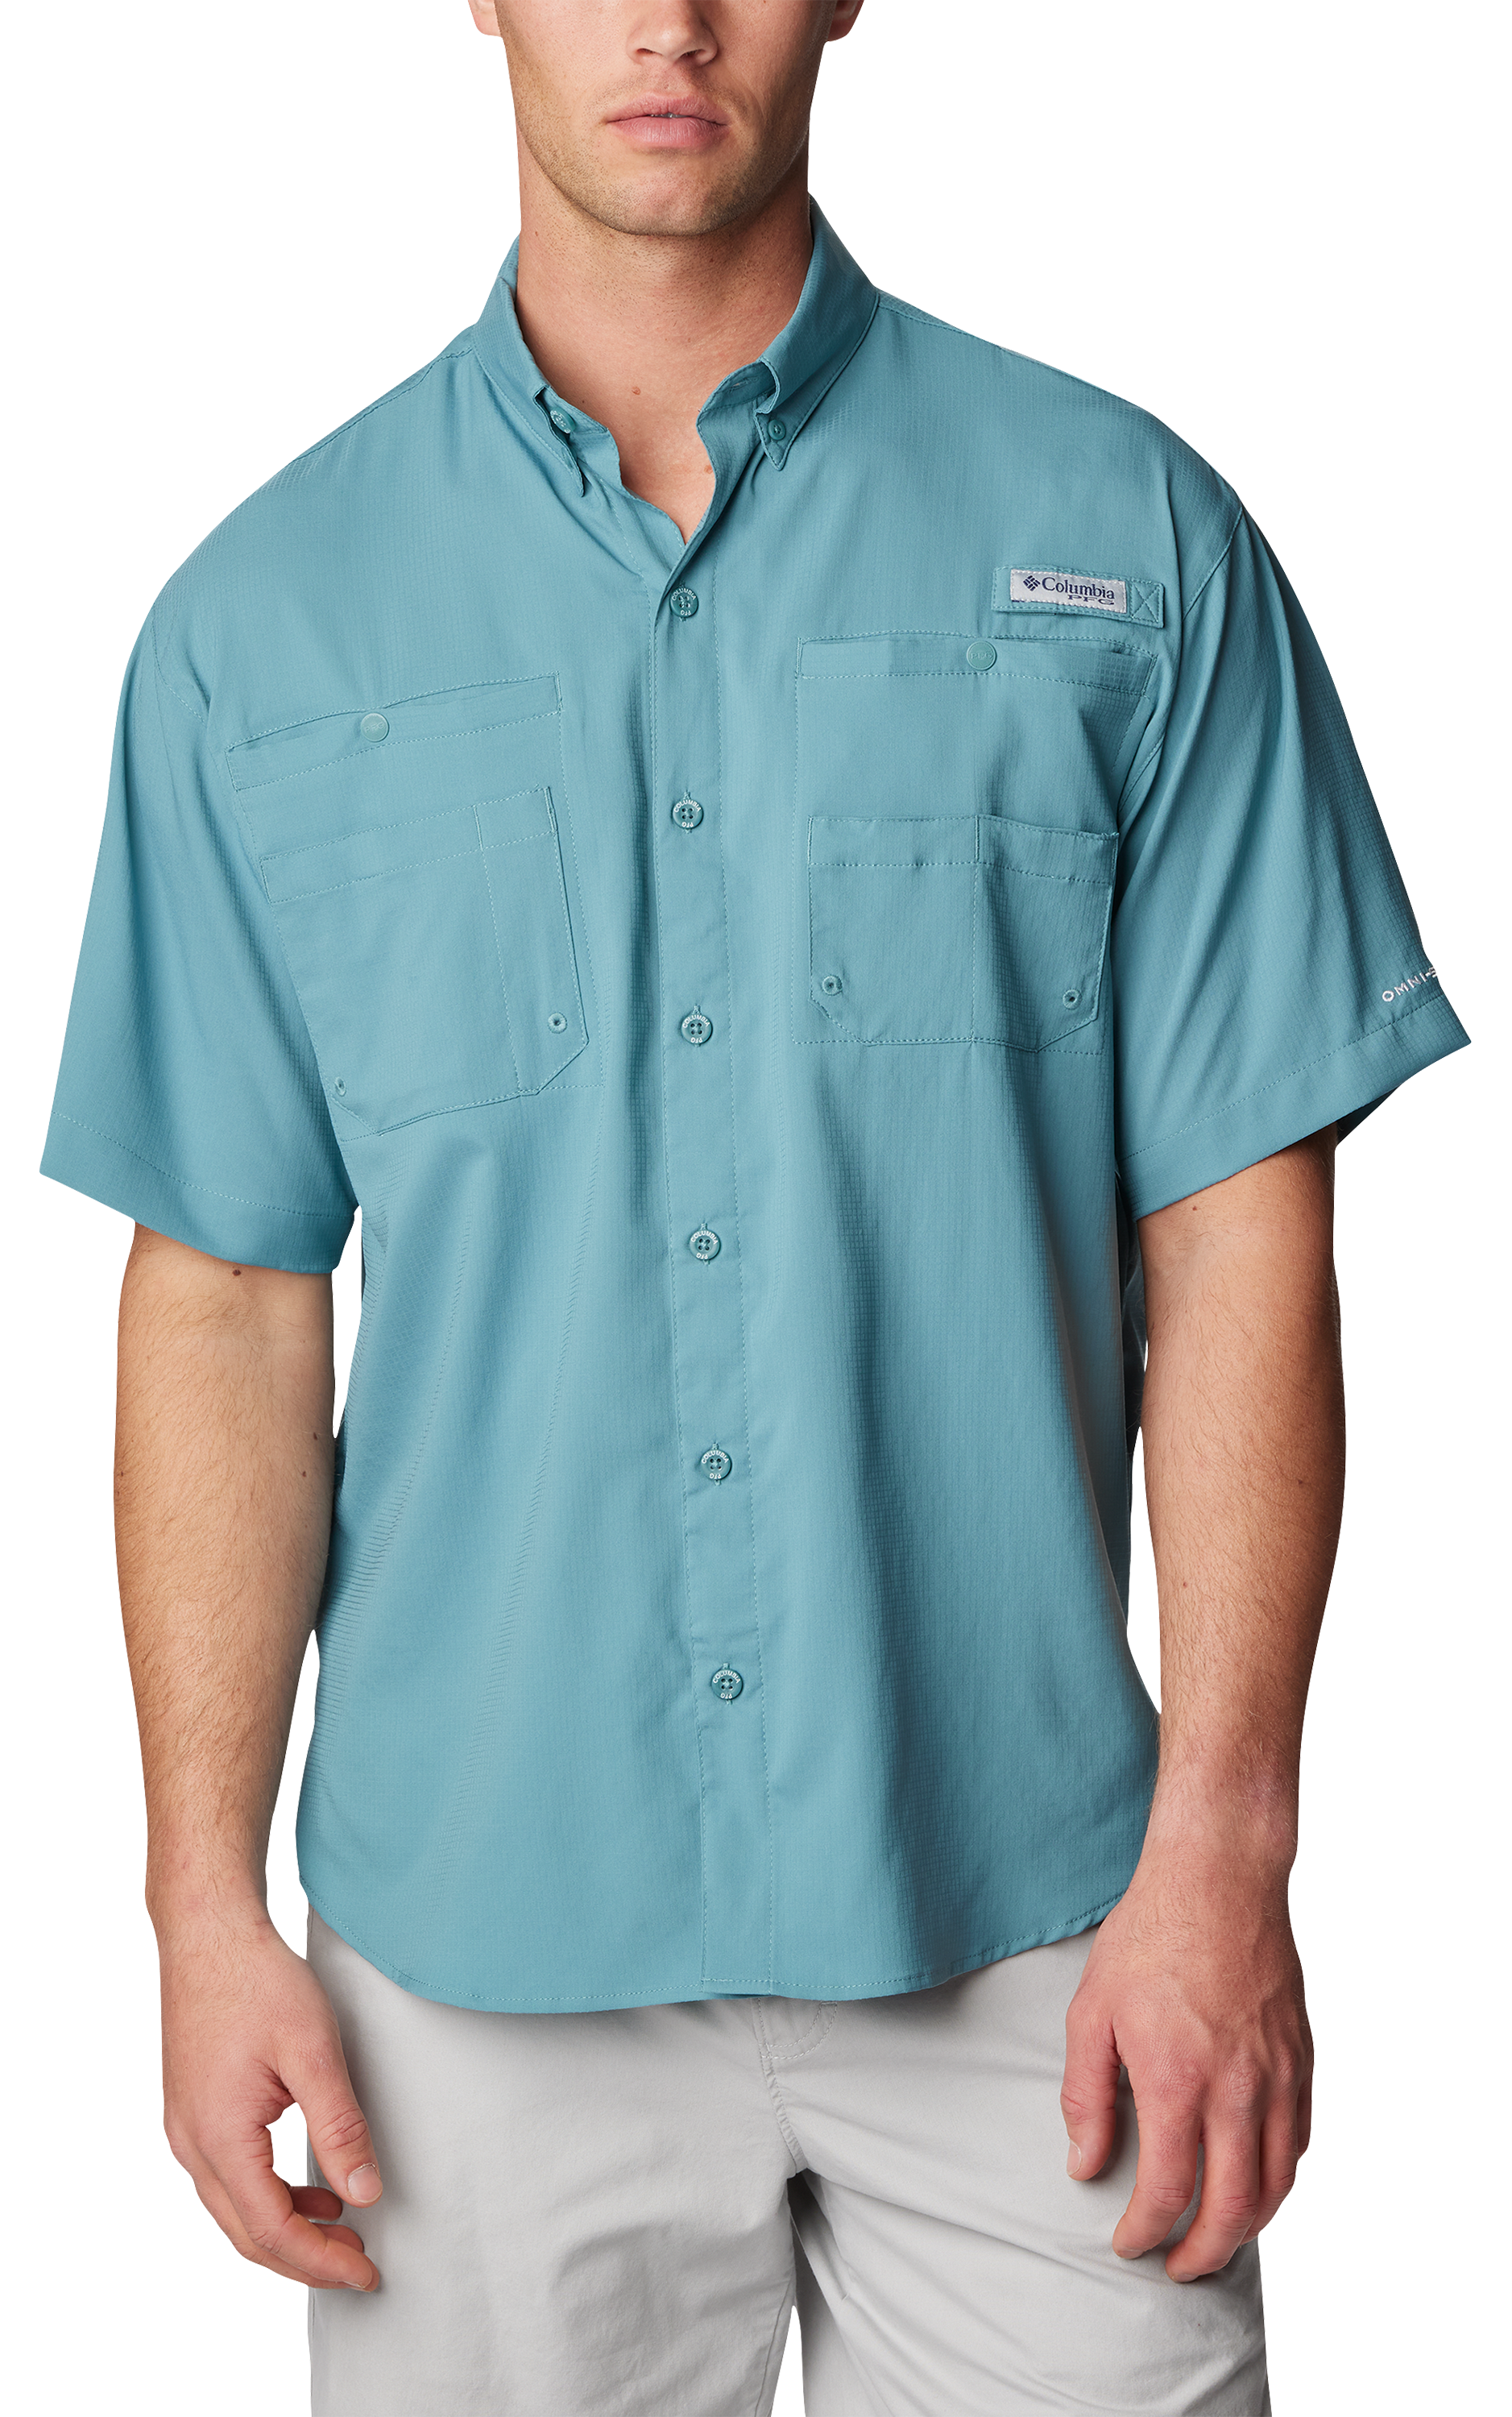 Columbia Men's Tamiami II Short Sleeve Fishing Shirt (White, Small)